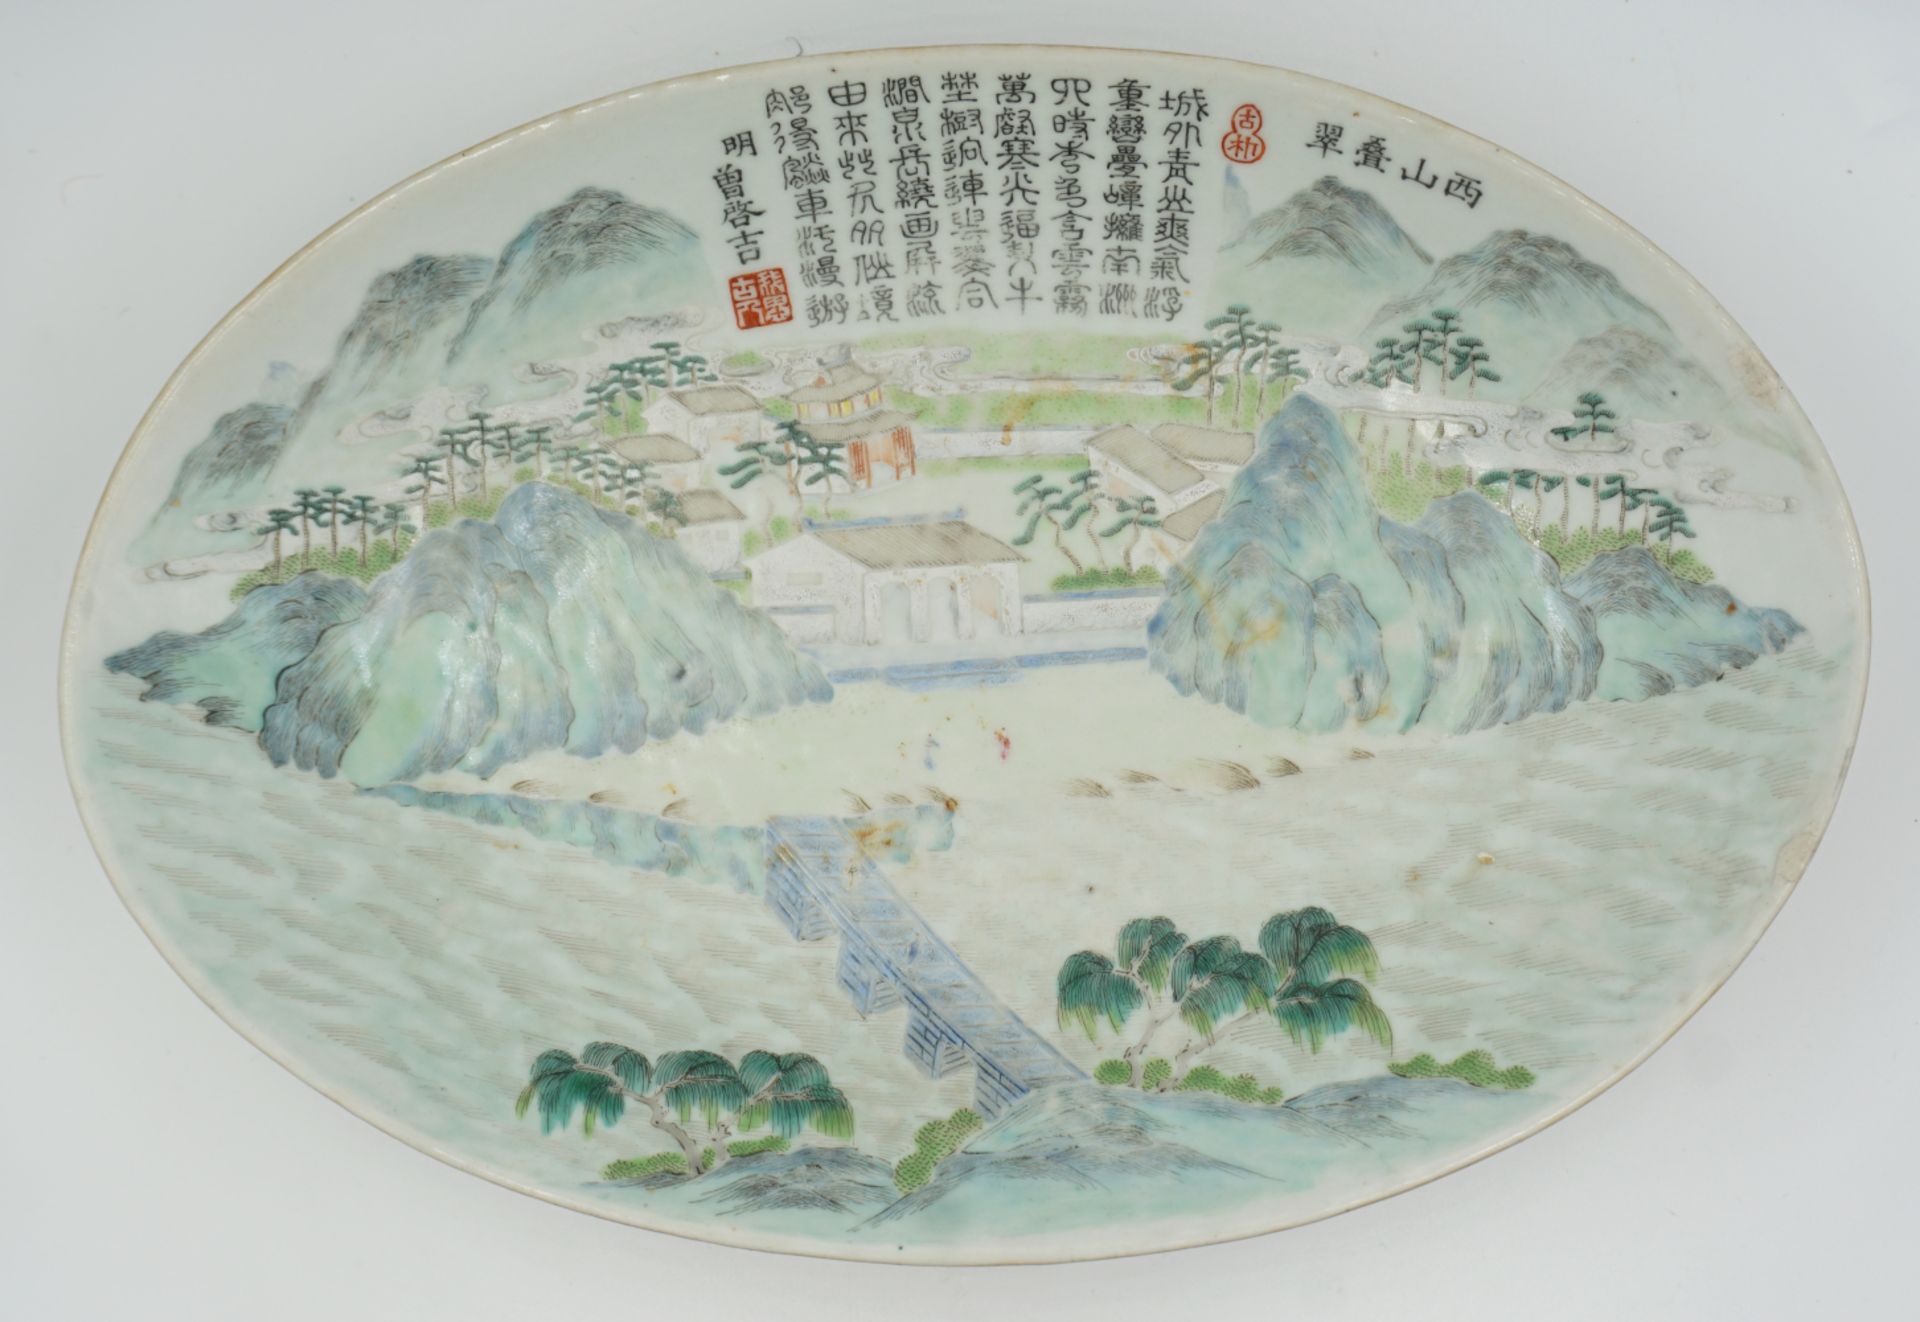 1 ovale Schale China lt. Notiz TUNG CHIH (1862-1874) "Landschaft mit Brücke", am Rand unters. "Goldf